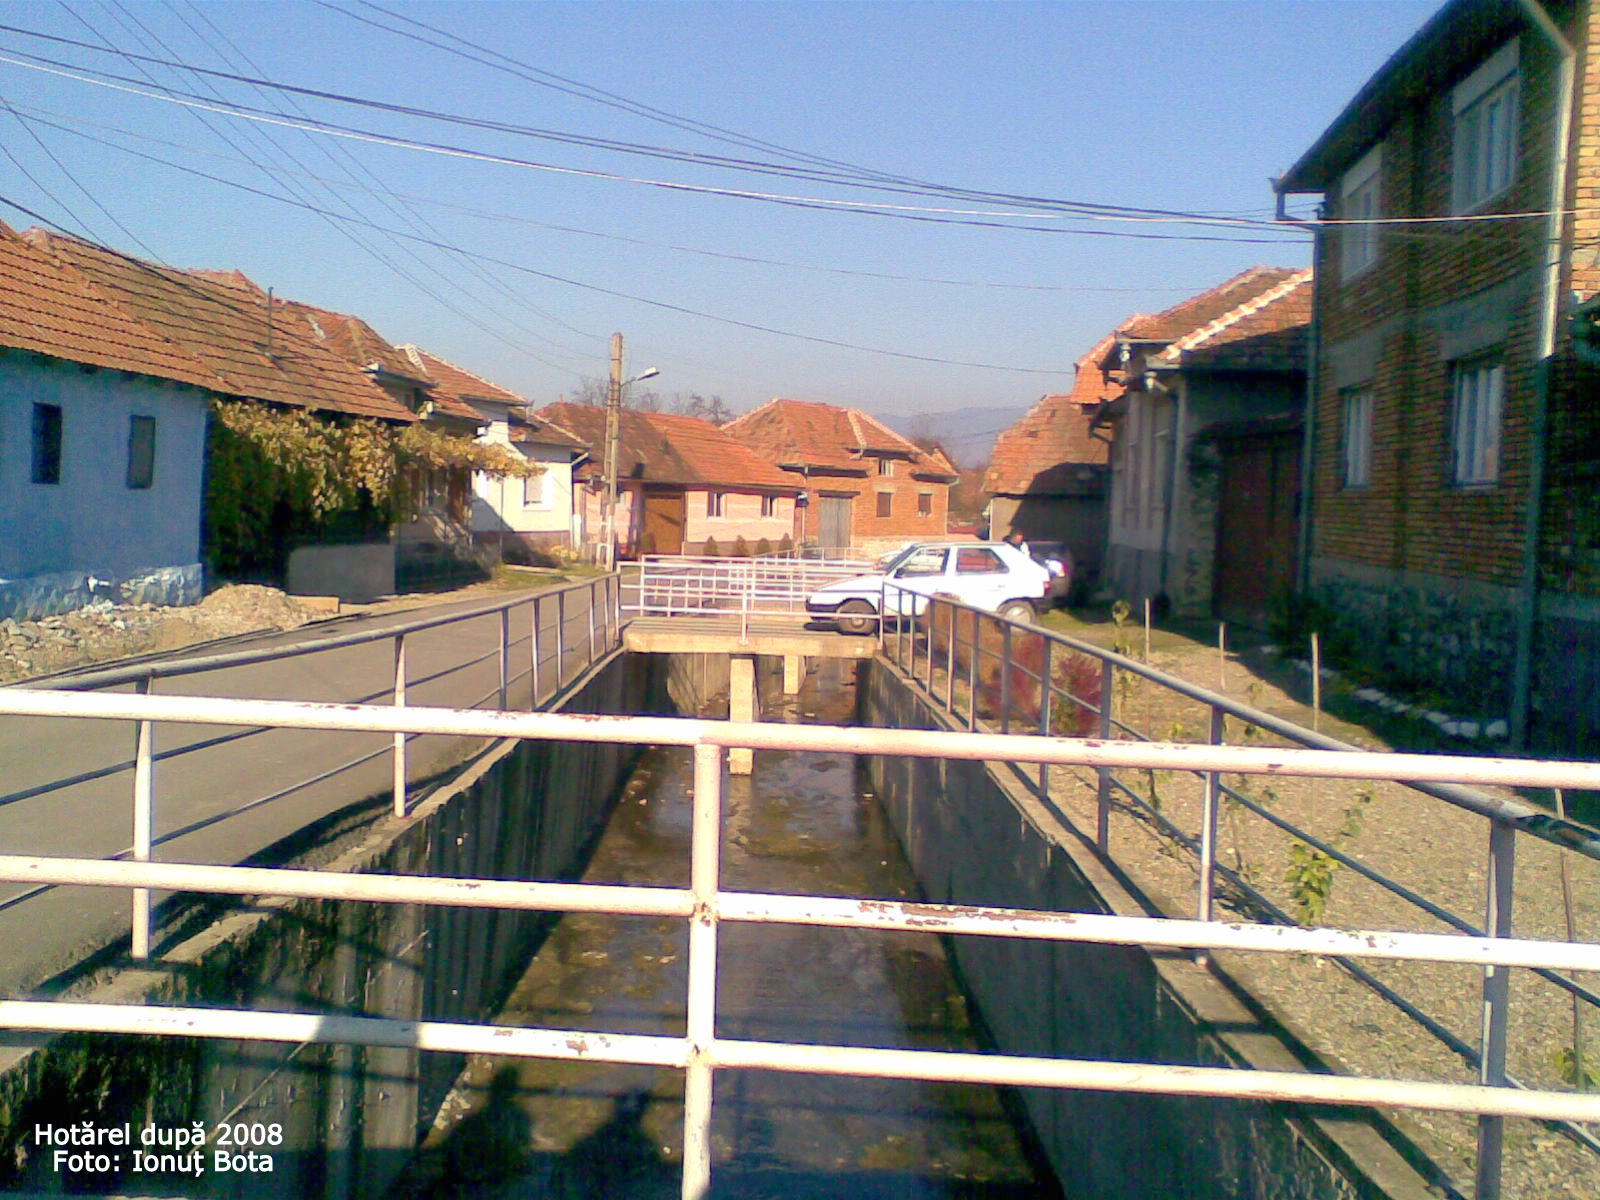 Hotarel, Bihor, Romania dupa 2008 ; satul Hotarel comuna Lunca judetul Bihor Romania